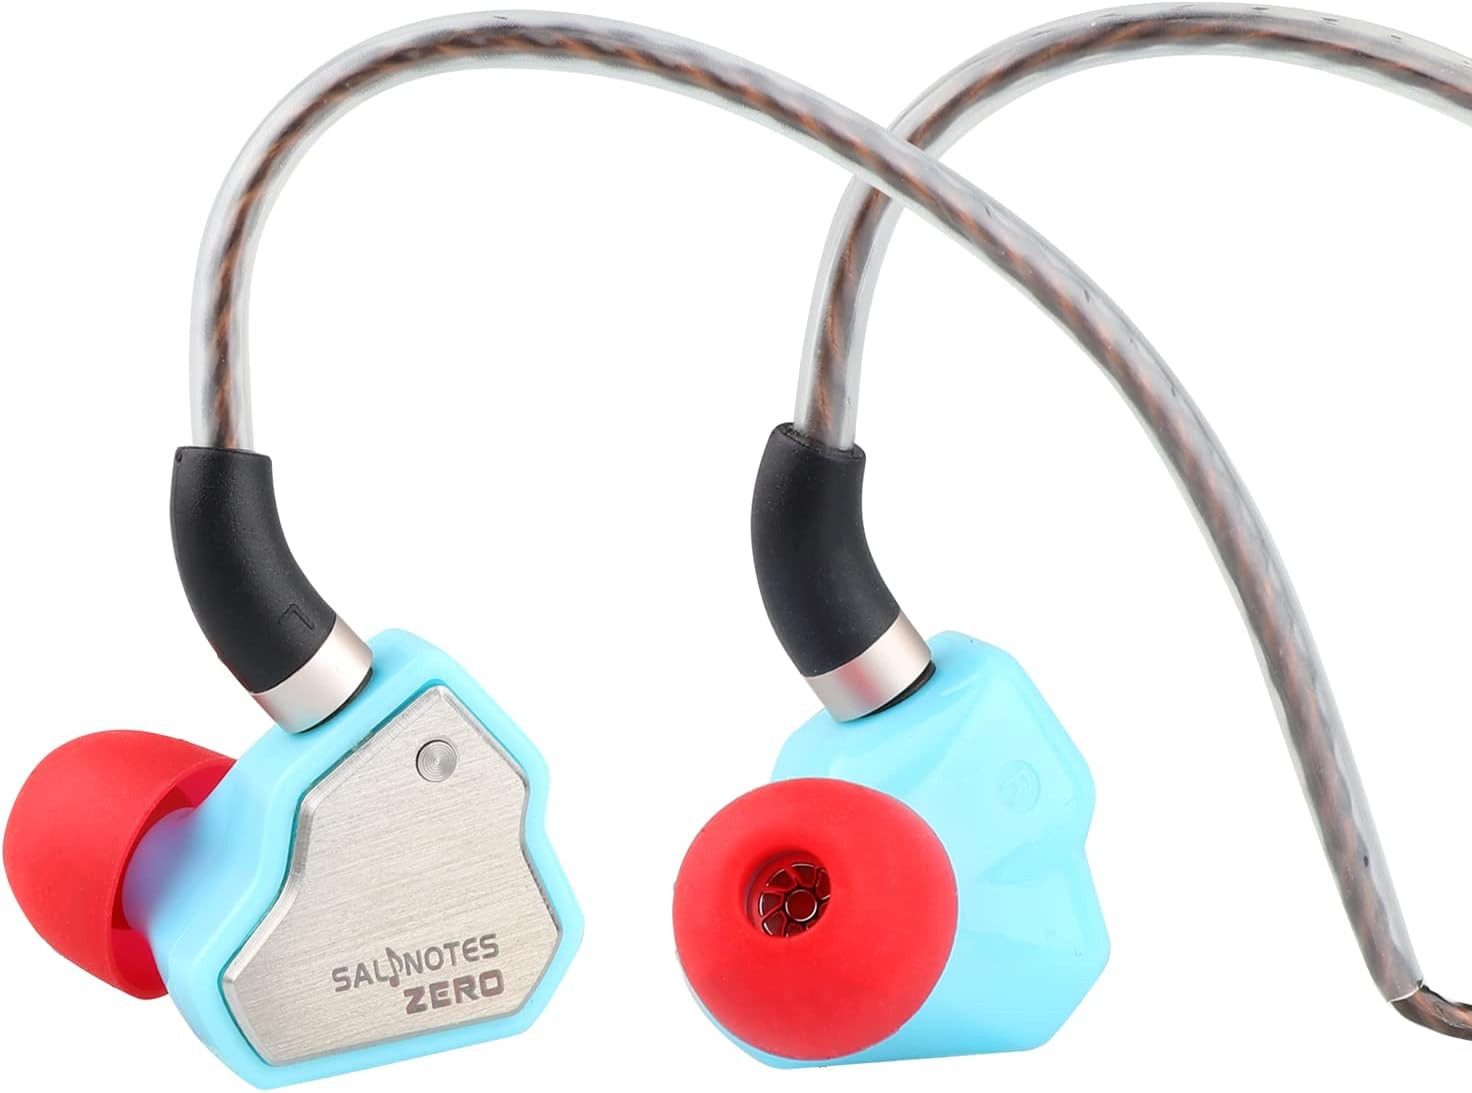 LINSOUL 7Hz Salnotes Zero HiFi 10 mm dynamischerTreibermitMetallverbundmembran In-Ear-Kopfhörer (Präzise Klangwiedergabe, die jeden Ton für audiophilen Genuss festhält., Edelstahl-Frontplatte, abnehmbares 2-poliges OFC-Kabel)